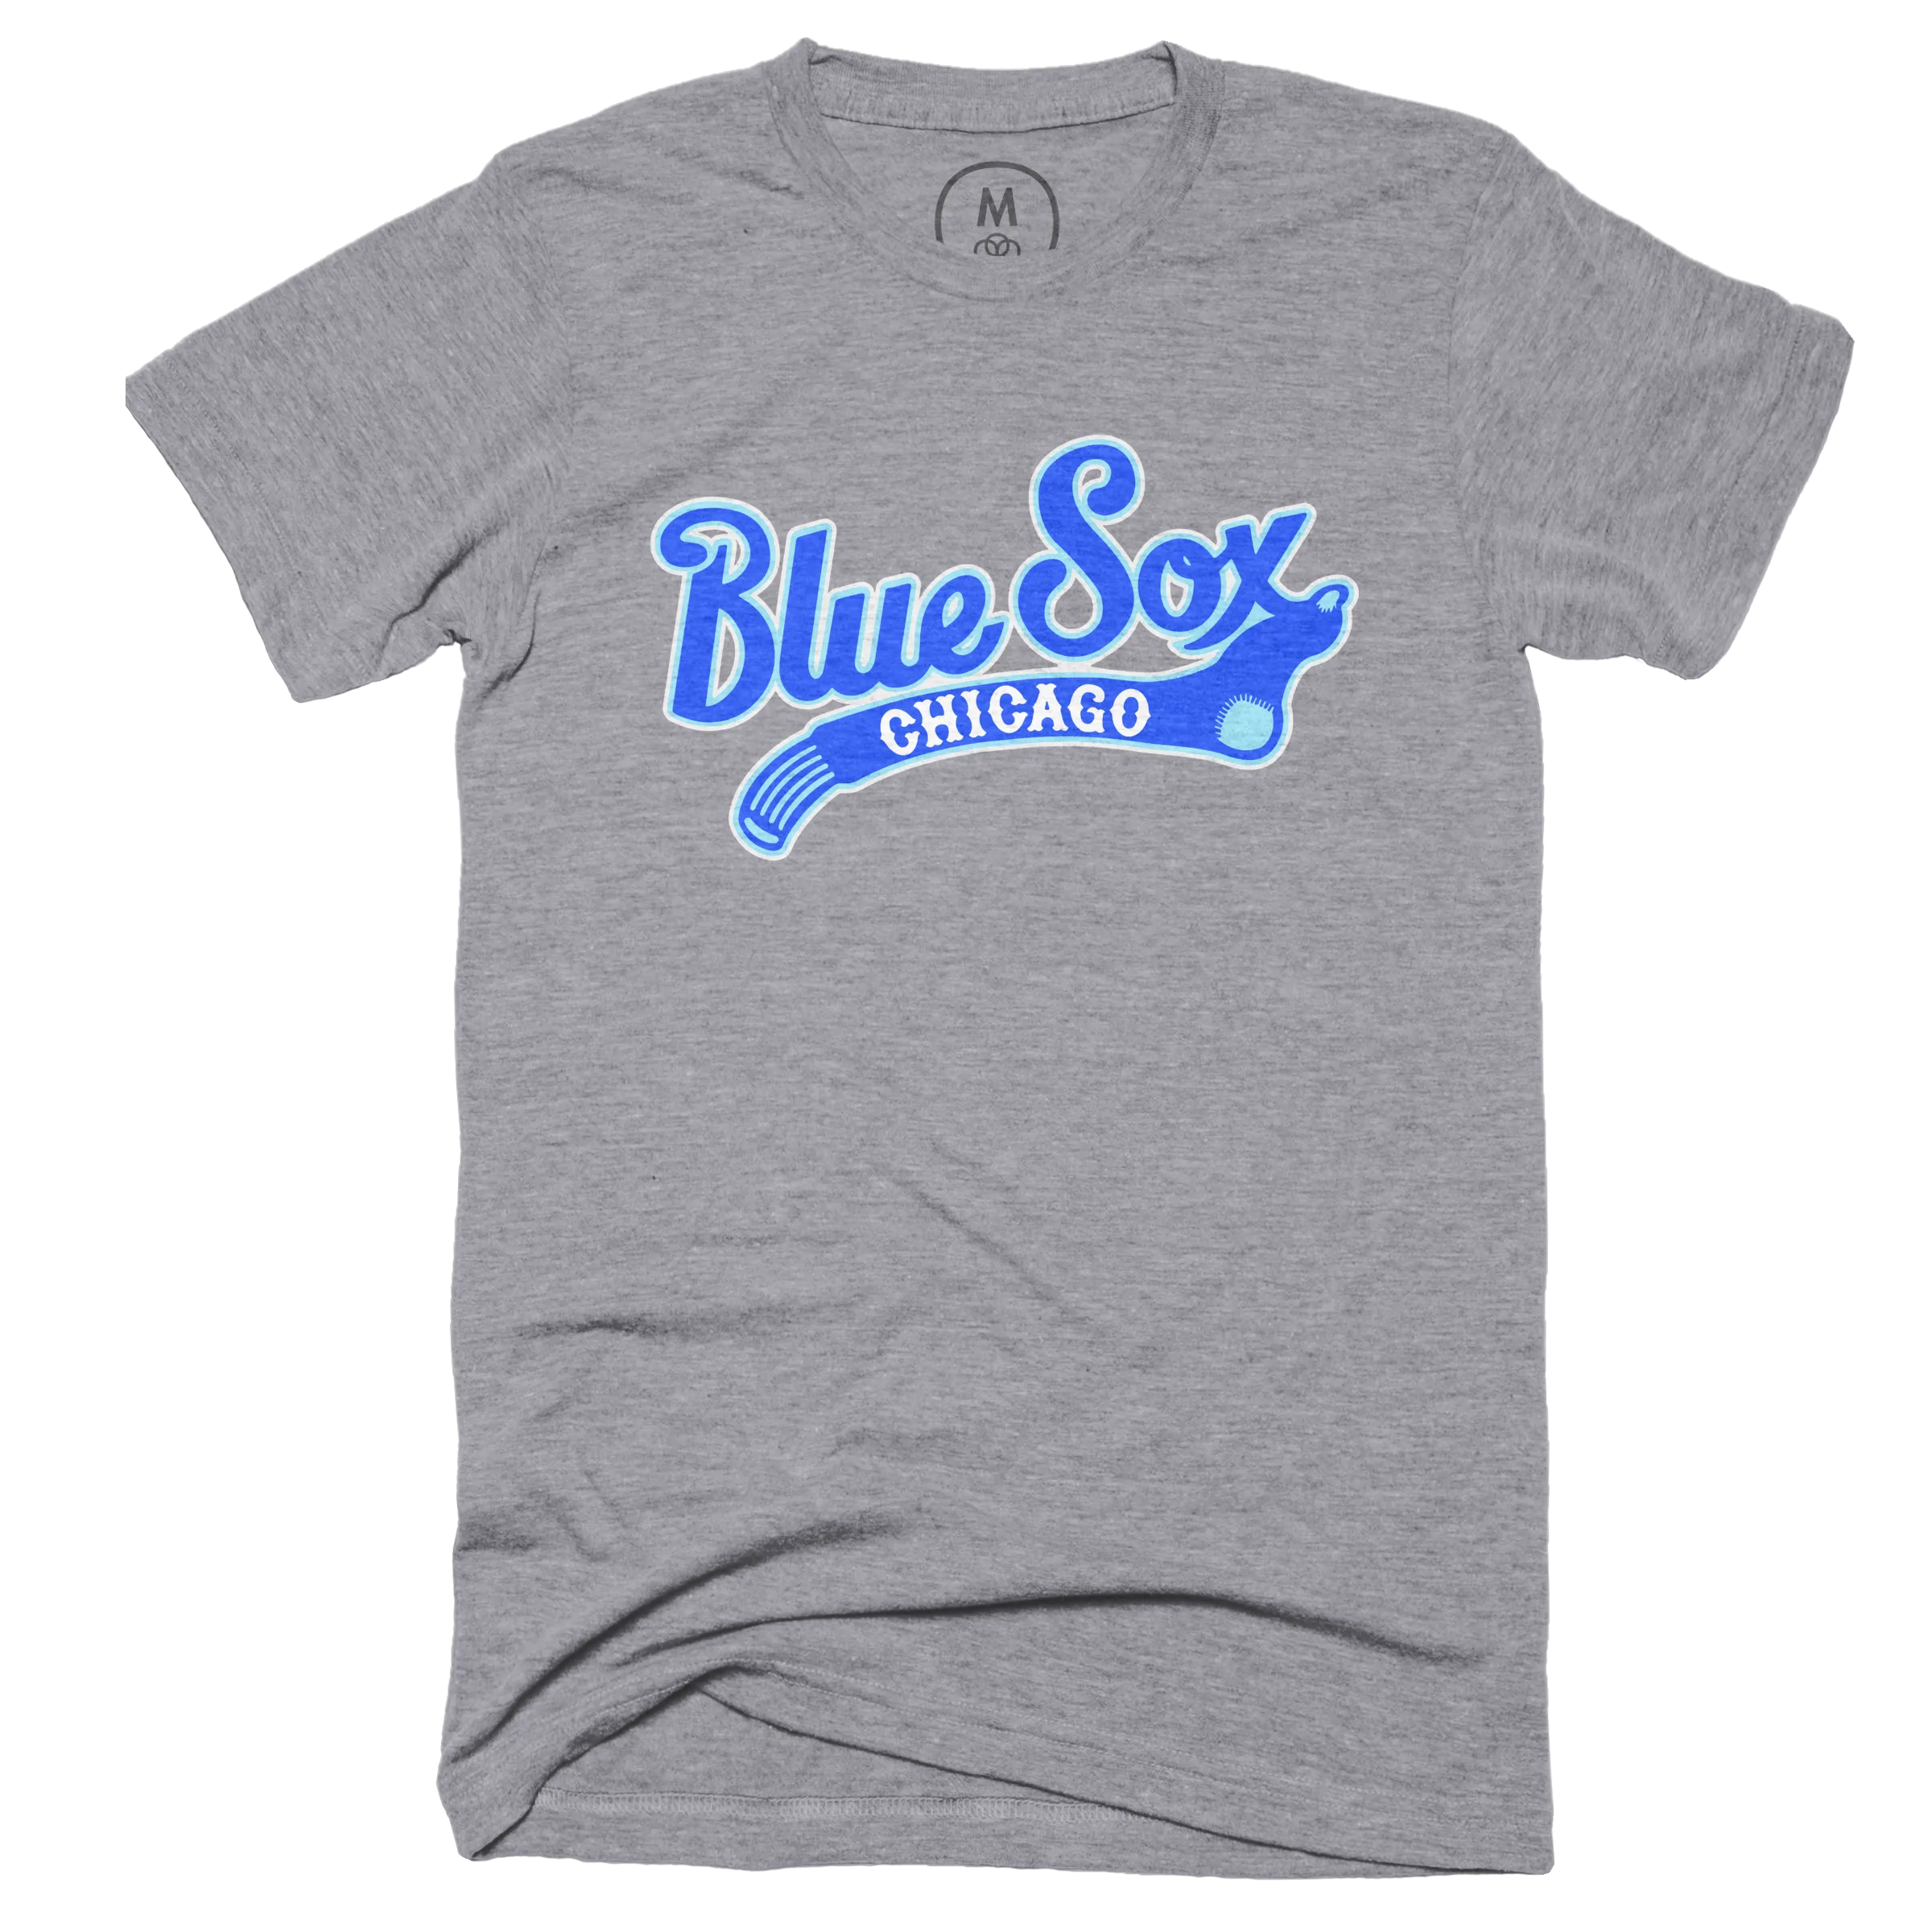 Chicago White Sox Personalized Baseball Jersey Shirt - T-shirts